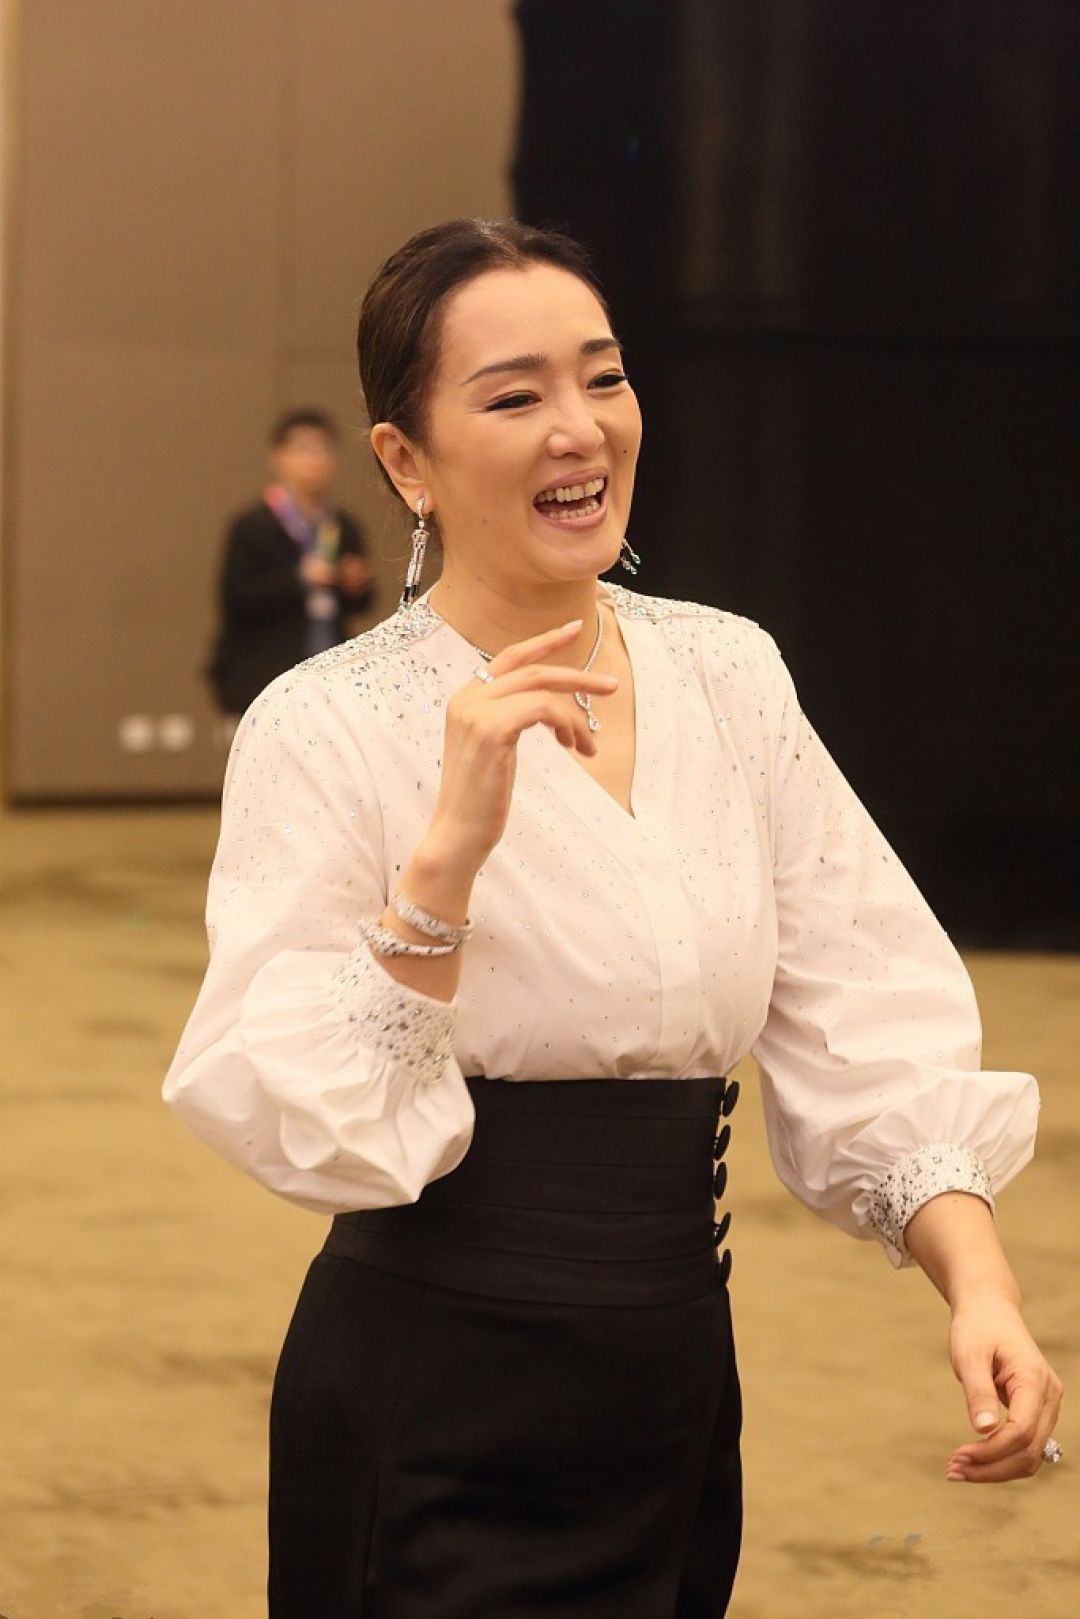 Belajar Menggunakan Setelah Hitam-Putih dari Aktris Gong Li-Image-2